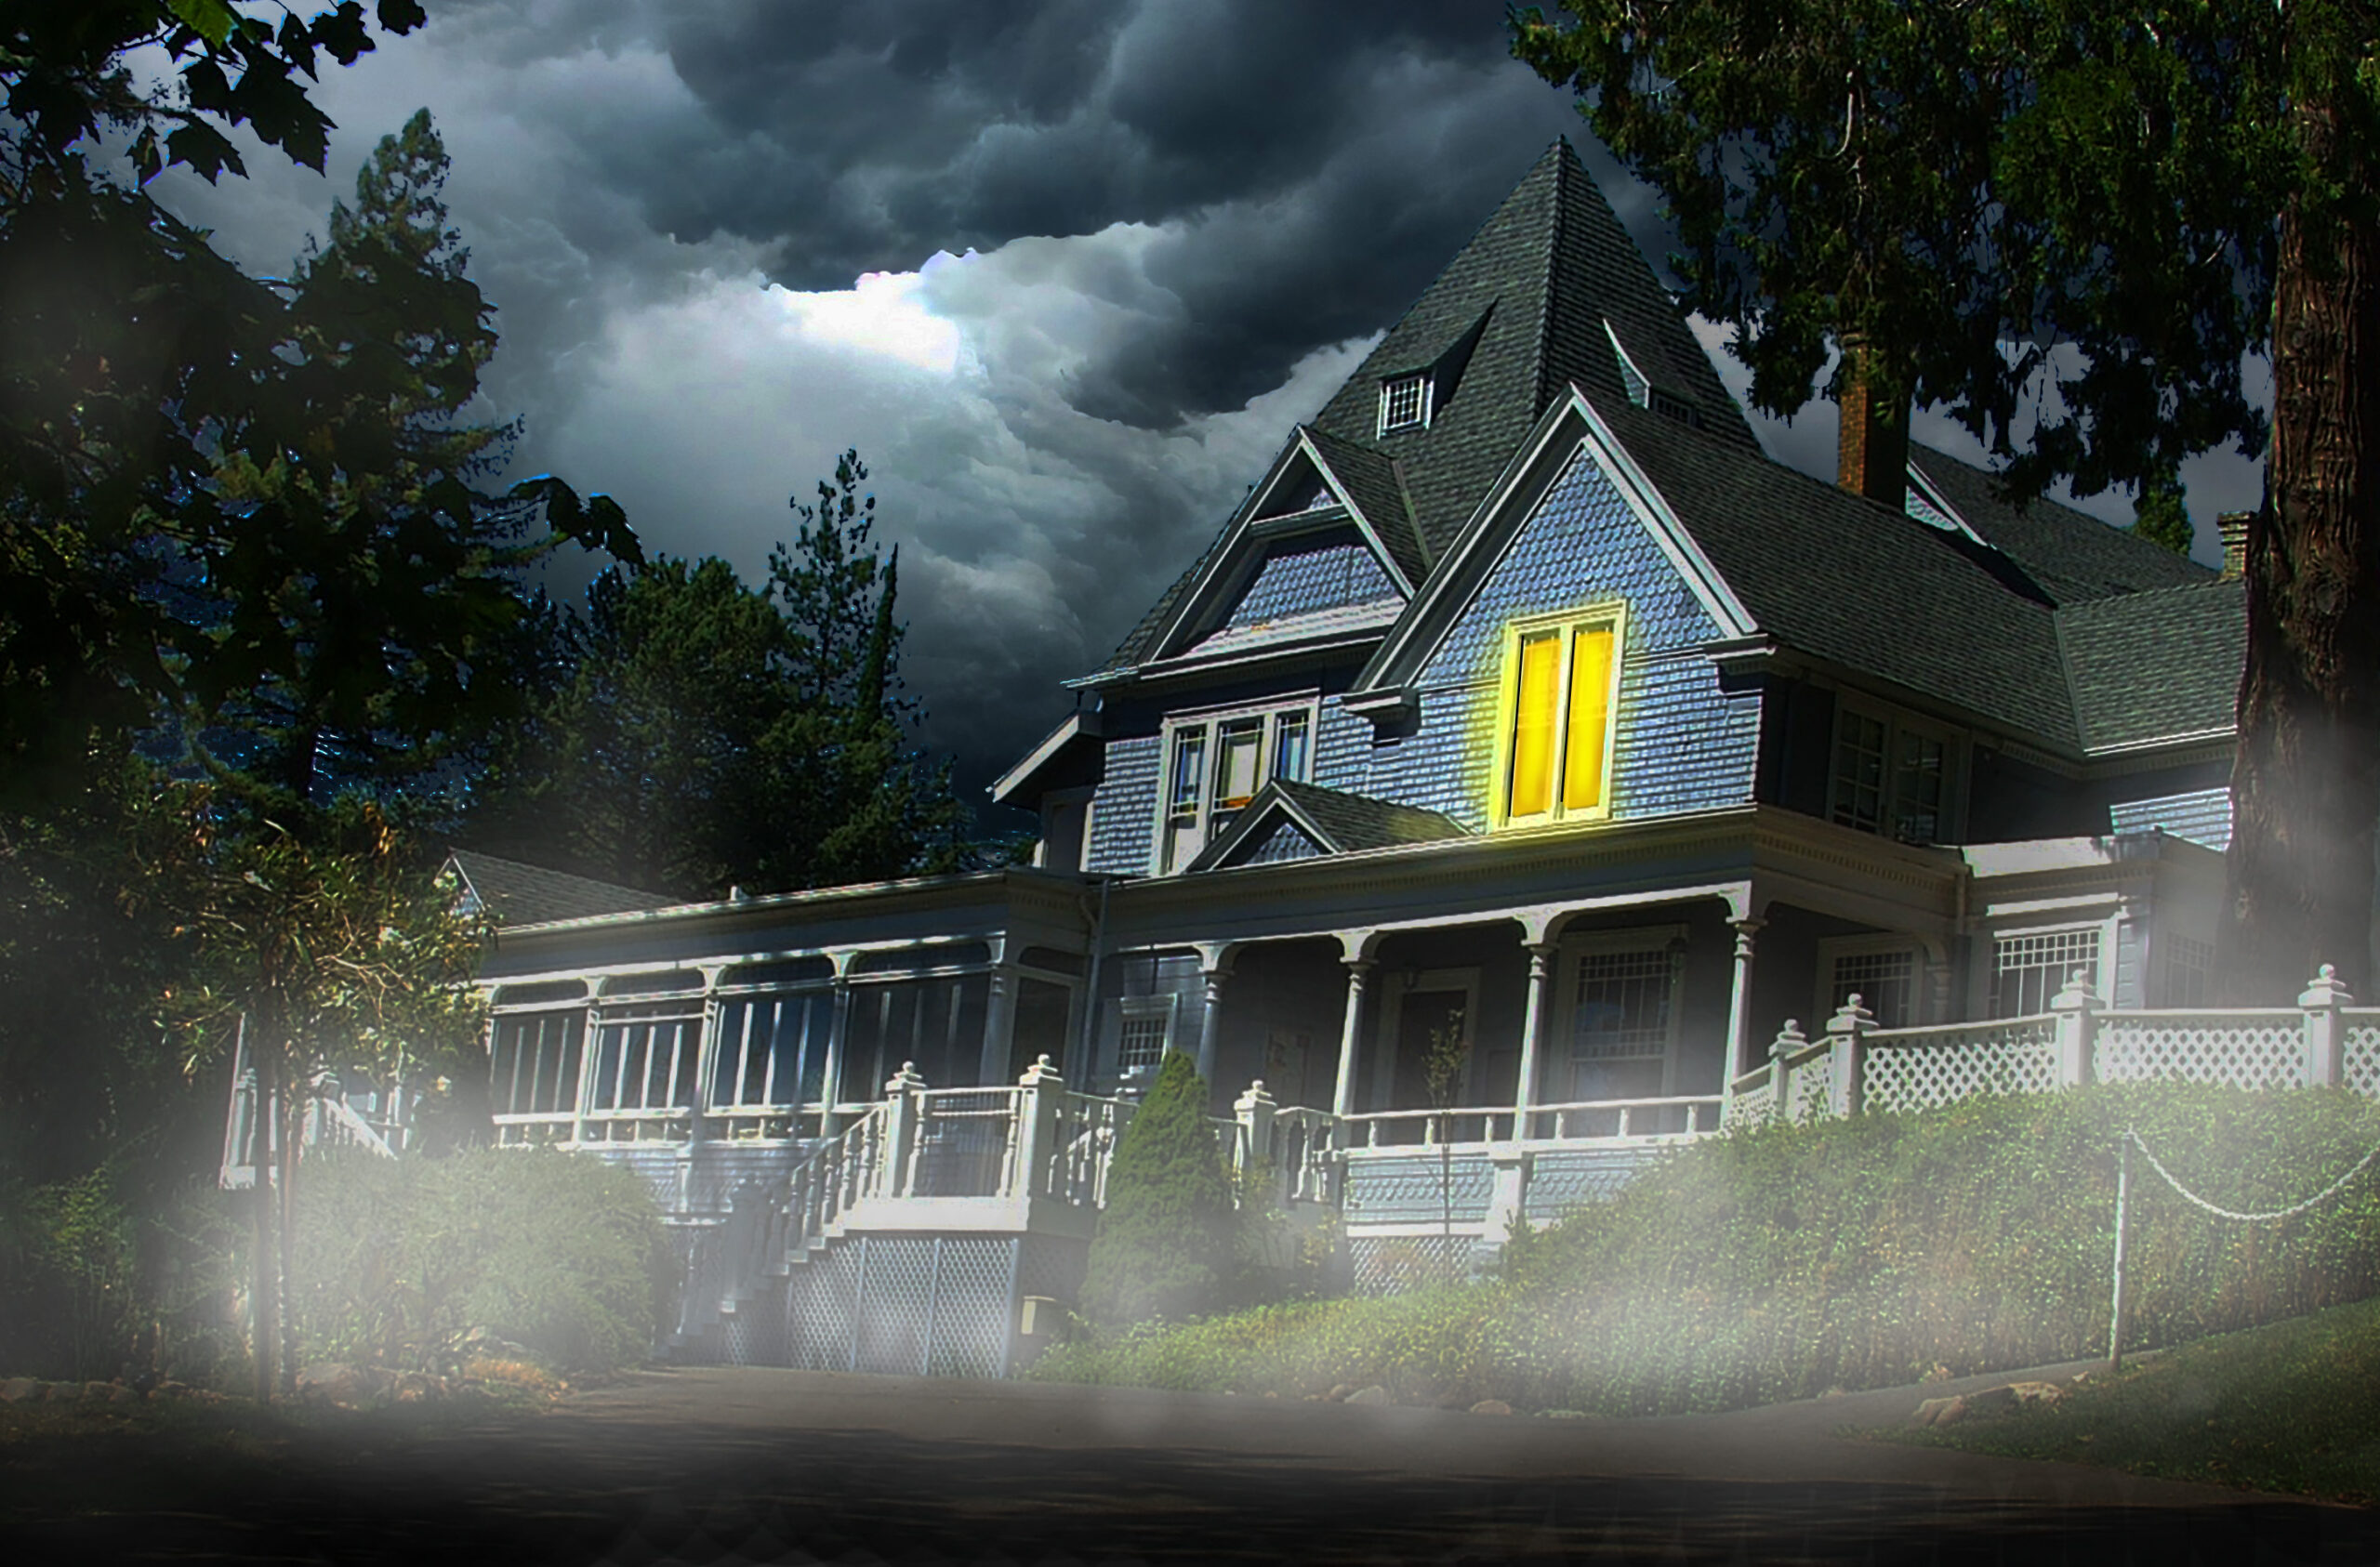 Sequoia mansion, spooky, dark skies.